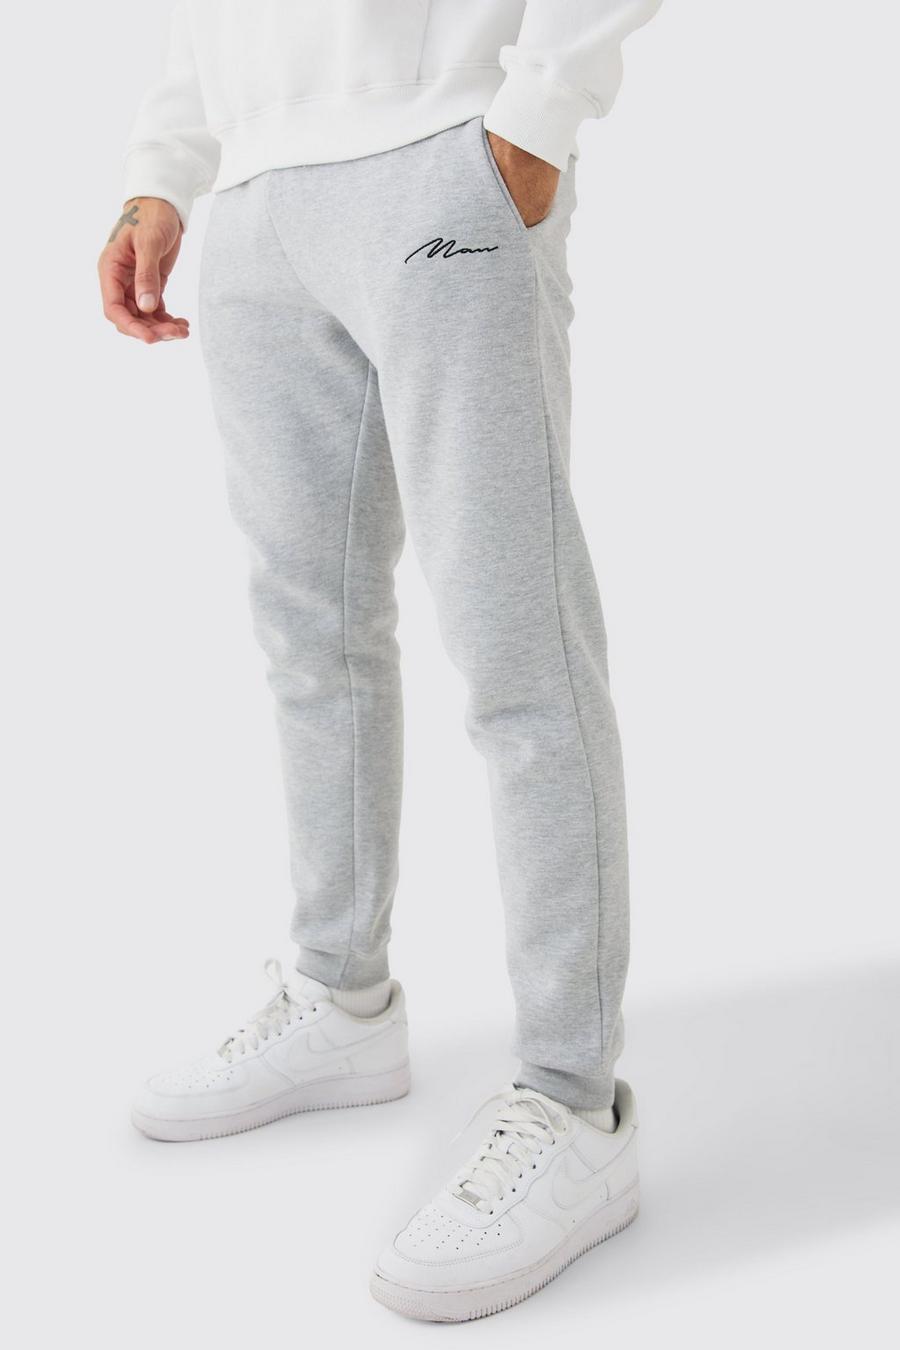 Pantalón deportivo ajustado con firma MAN, Grey marl